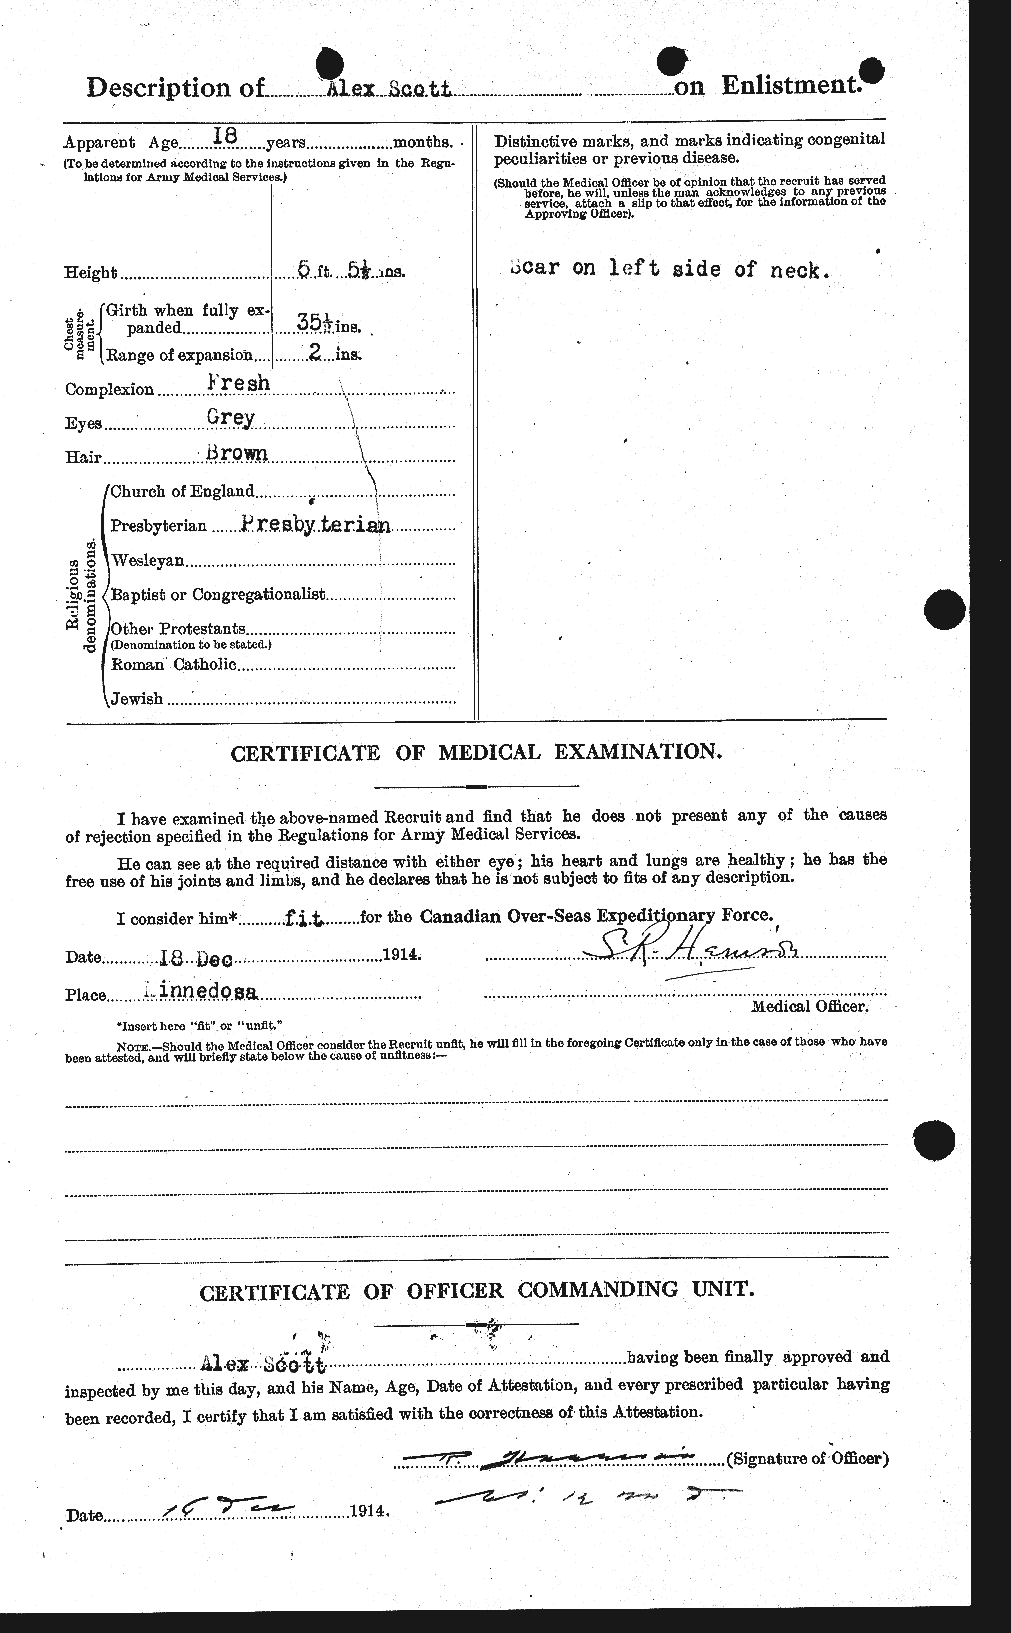 Dossiers du Personnel de la Première Guerre mondiale - CEC 086838b